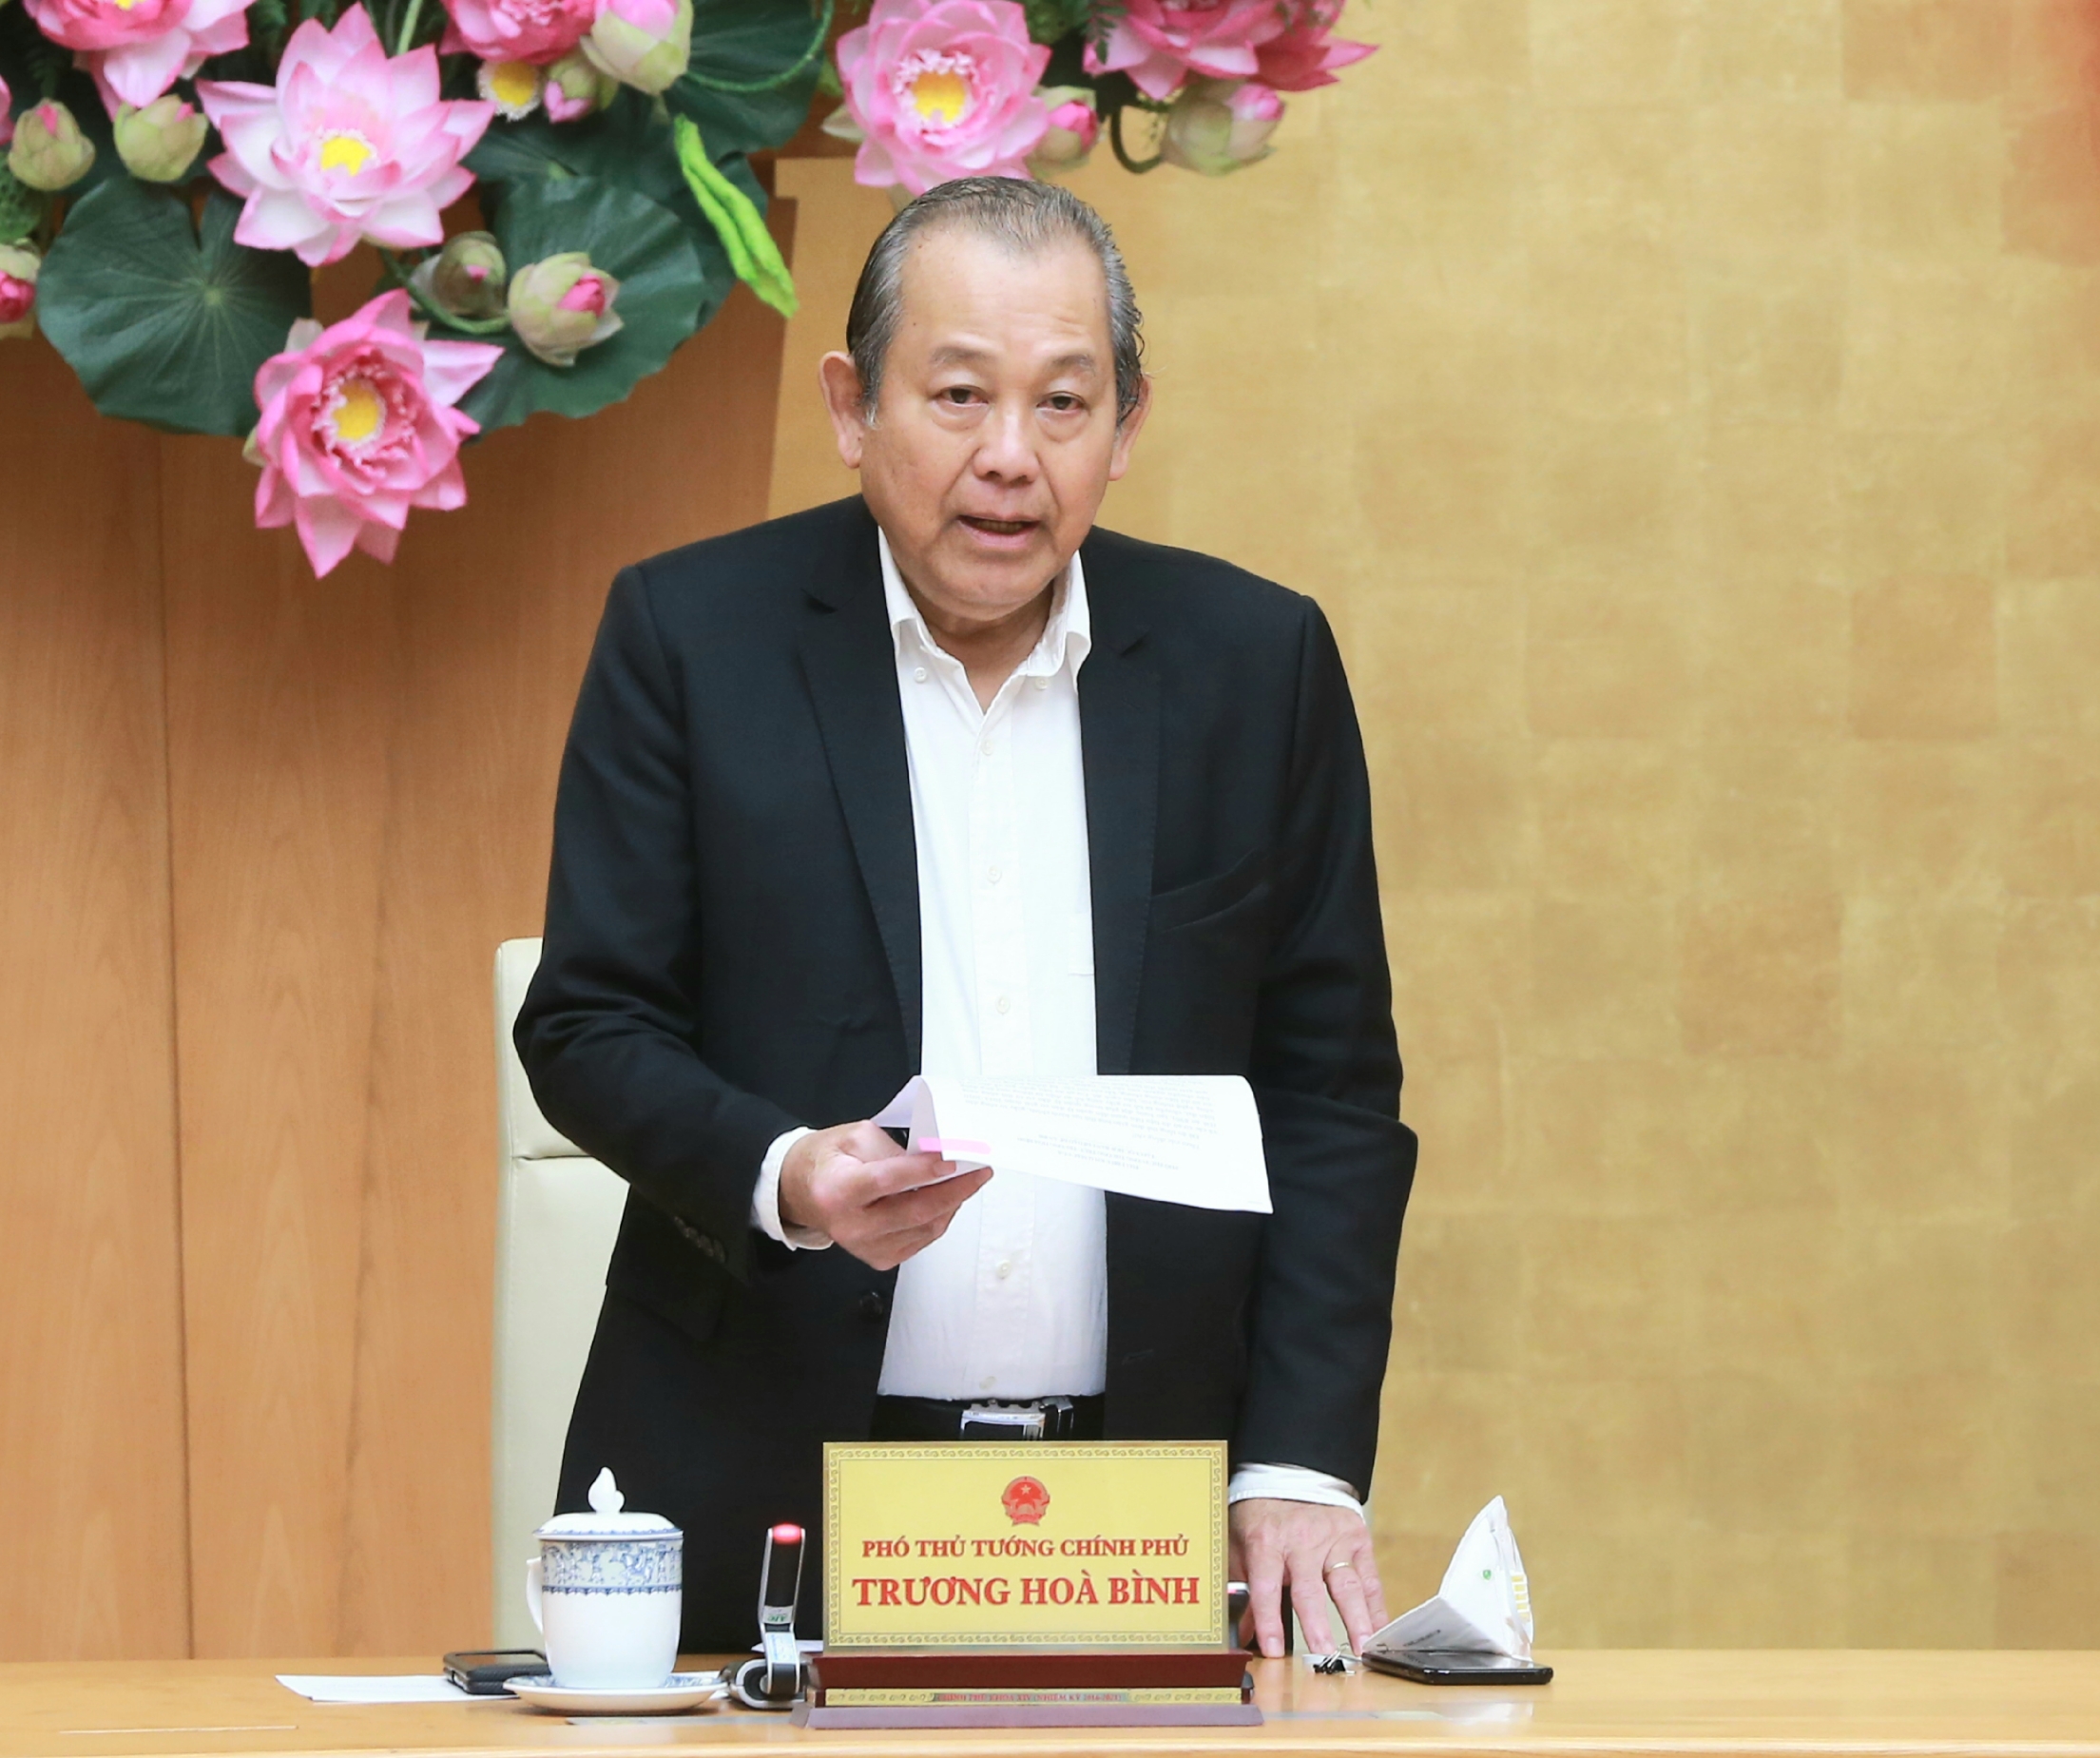 Phó Thủ tướng Trương Hòa Bình phát biểu tại hội nghị. Ảnh: VGP/Lê Sơn